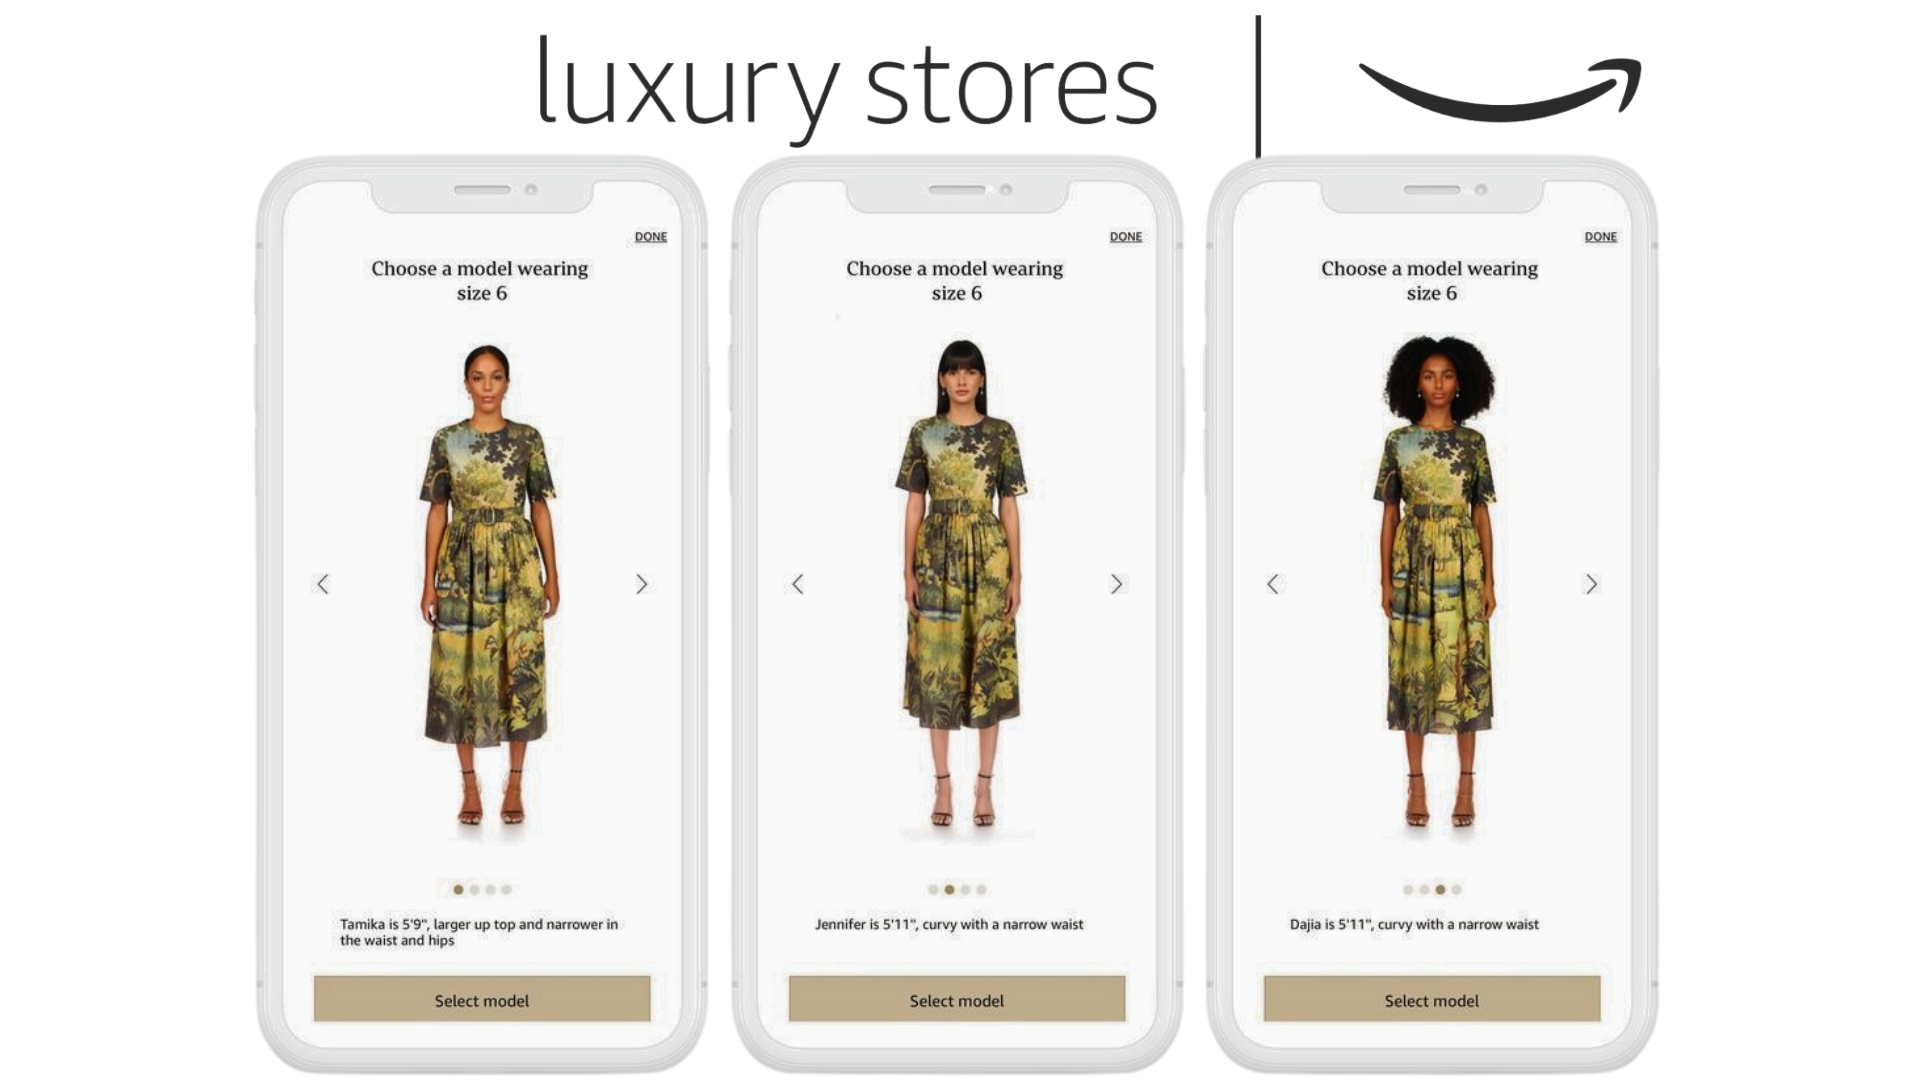 La moda de lujo de Amazon Luxury Stores ya está disponible en España